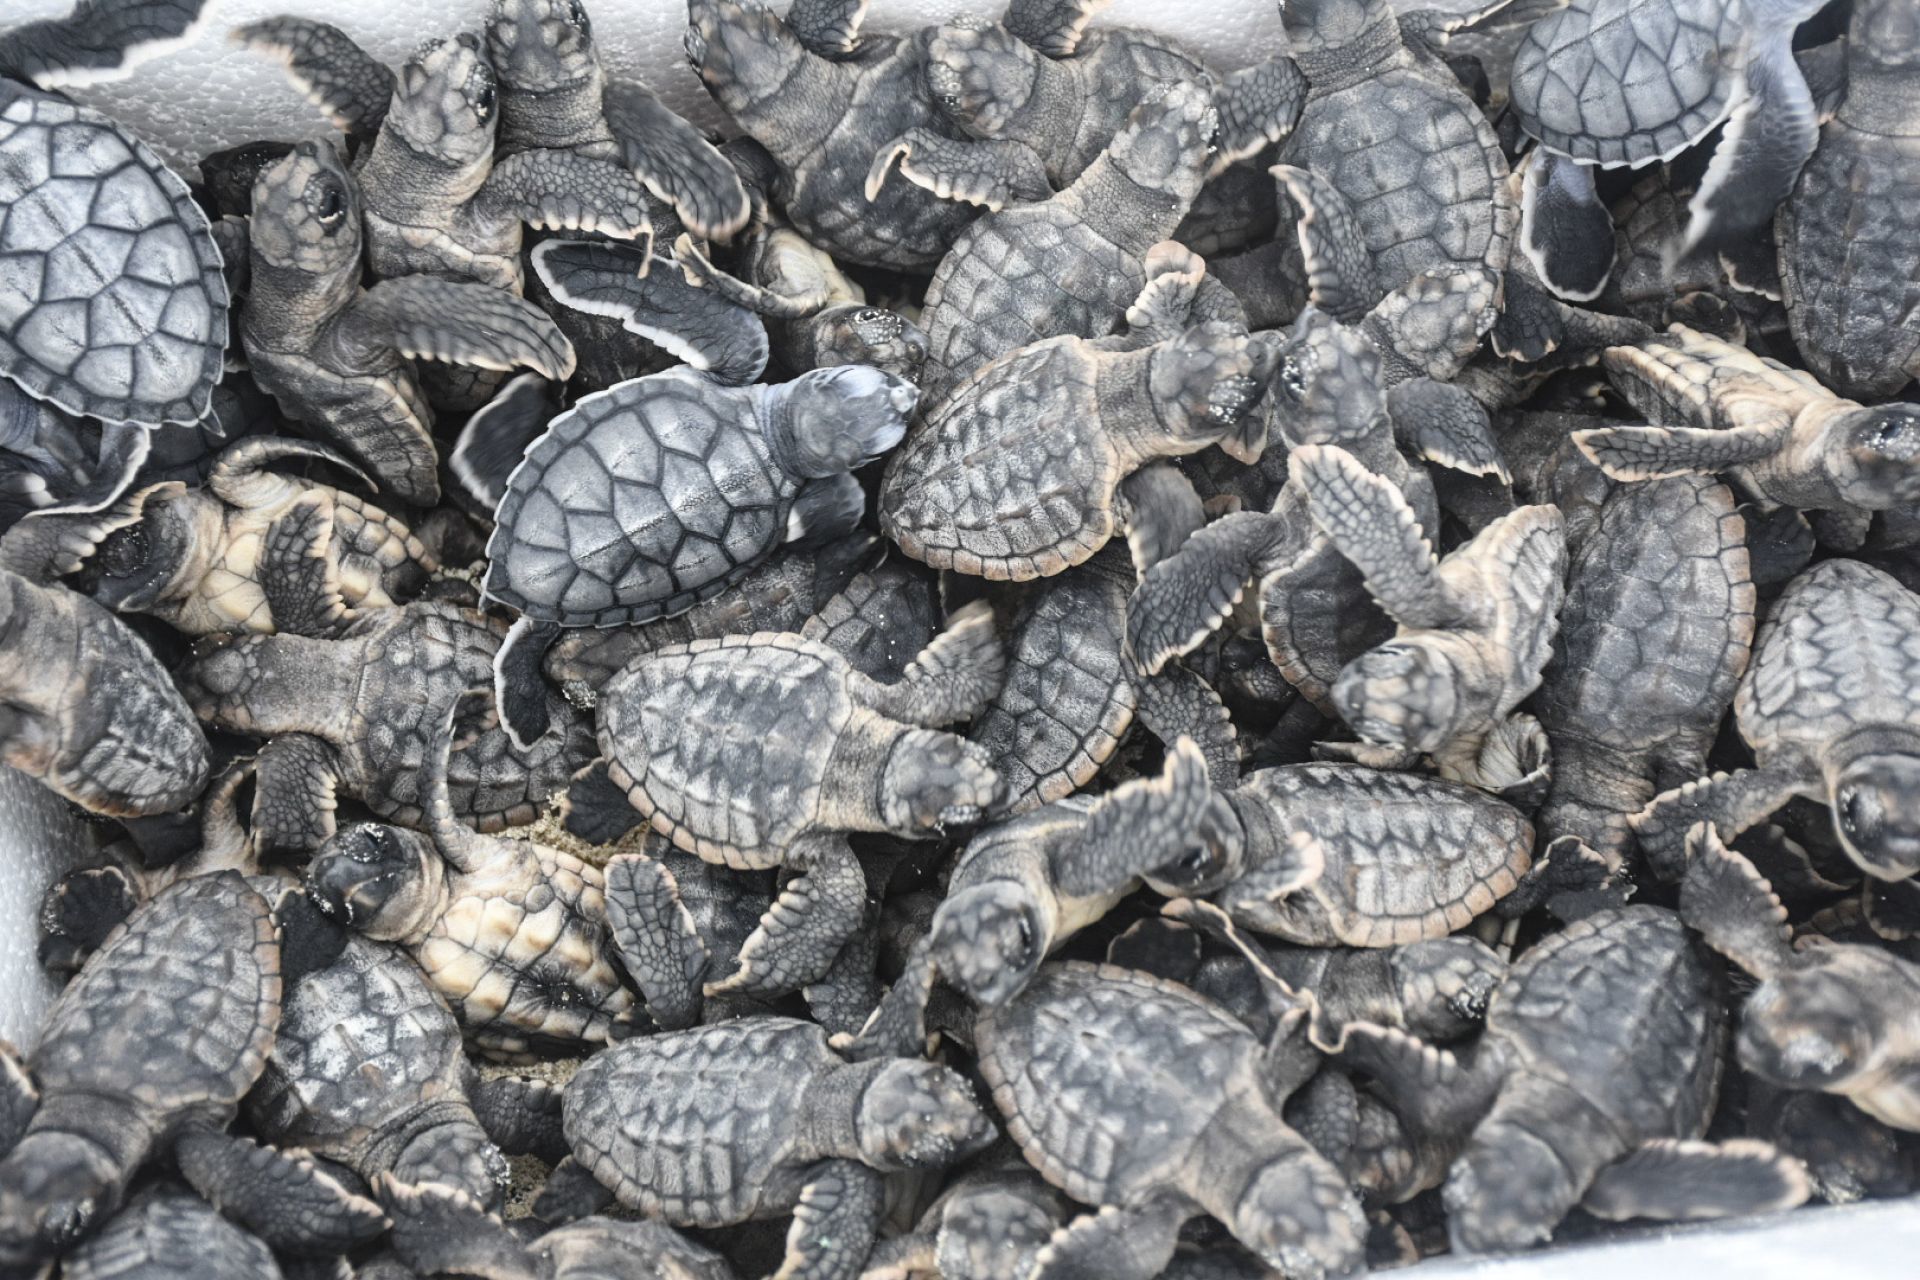 Murieron más de 5 mil tortugas rescatadas en el AICM; pretendían traficarlas a China